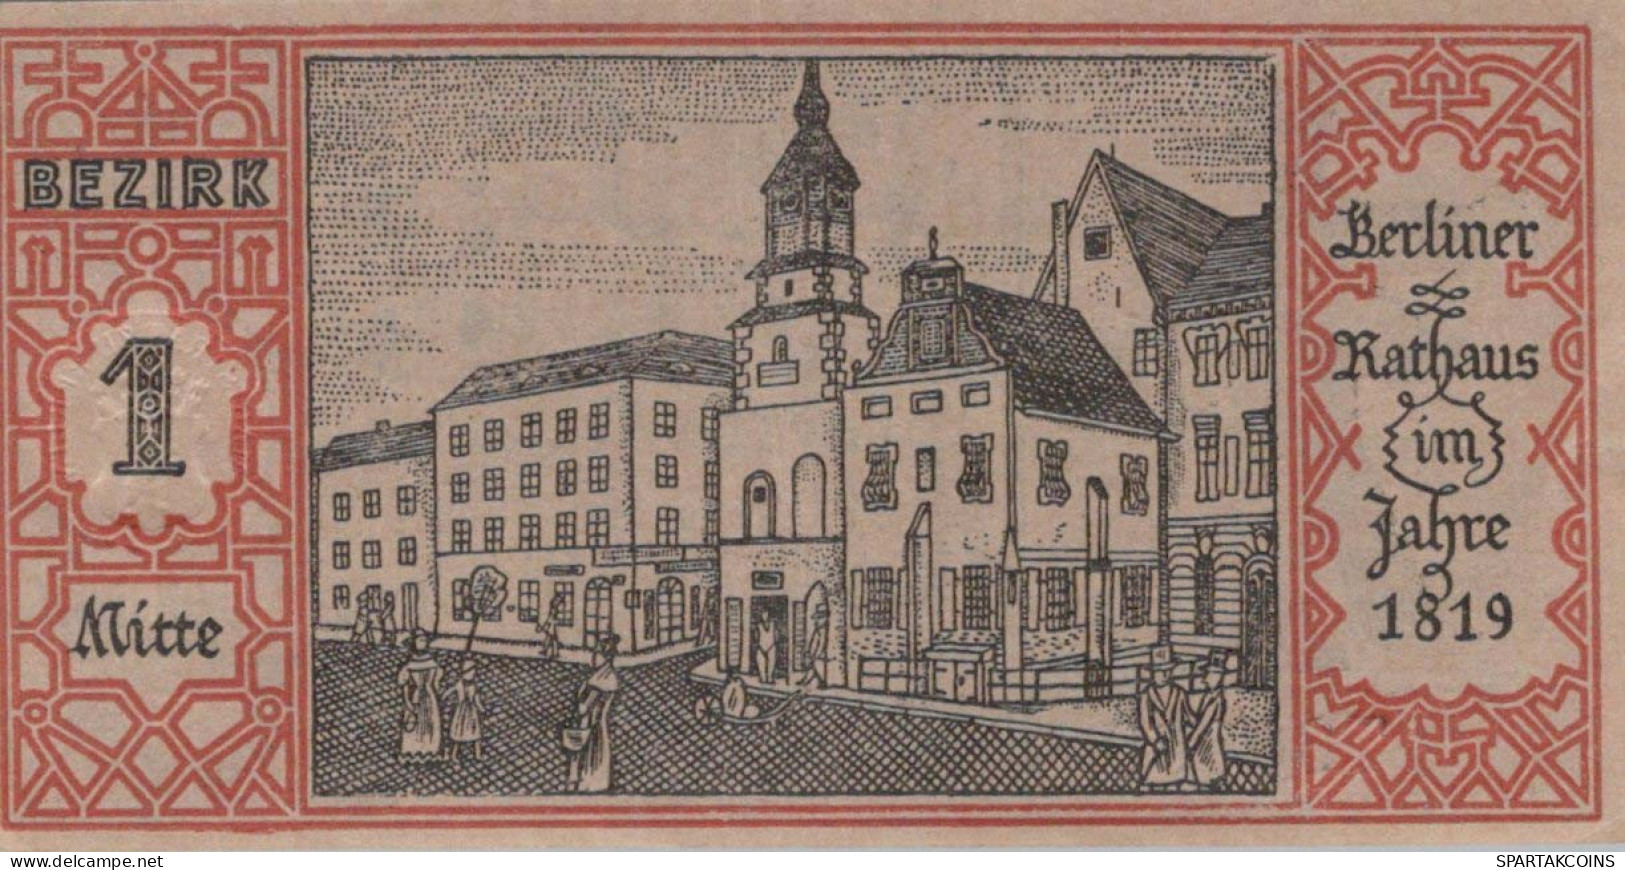 50 PFENNIG 1921 Stadt BERLIN UNC DEUTSCHLAND Notgeld Banknote #PH731 - [11] Local Banknote Issues